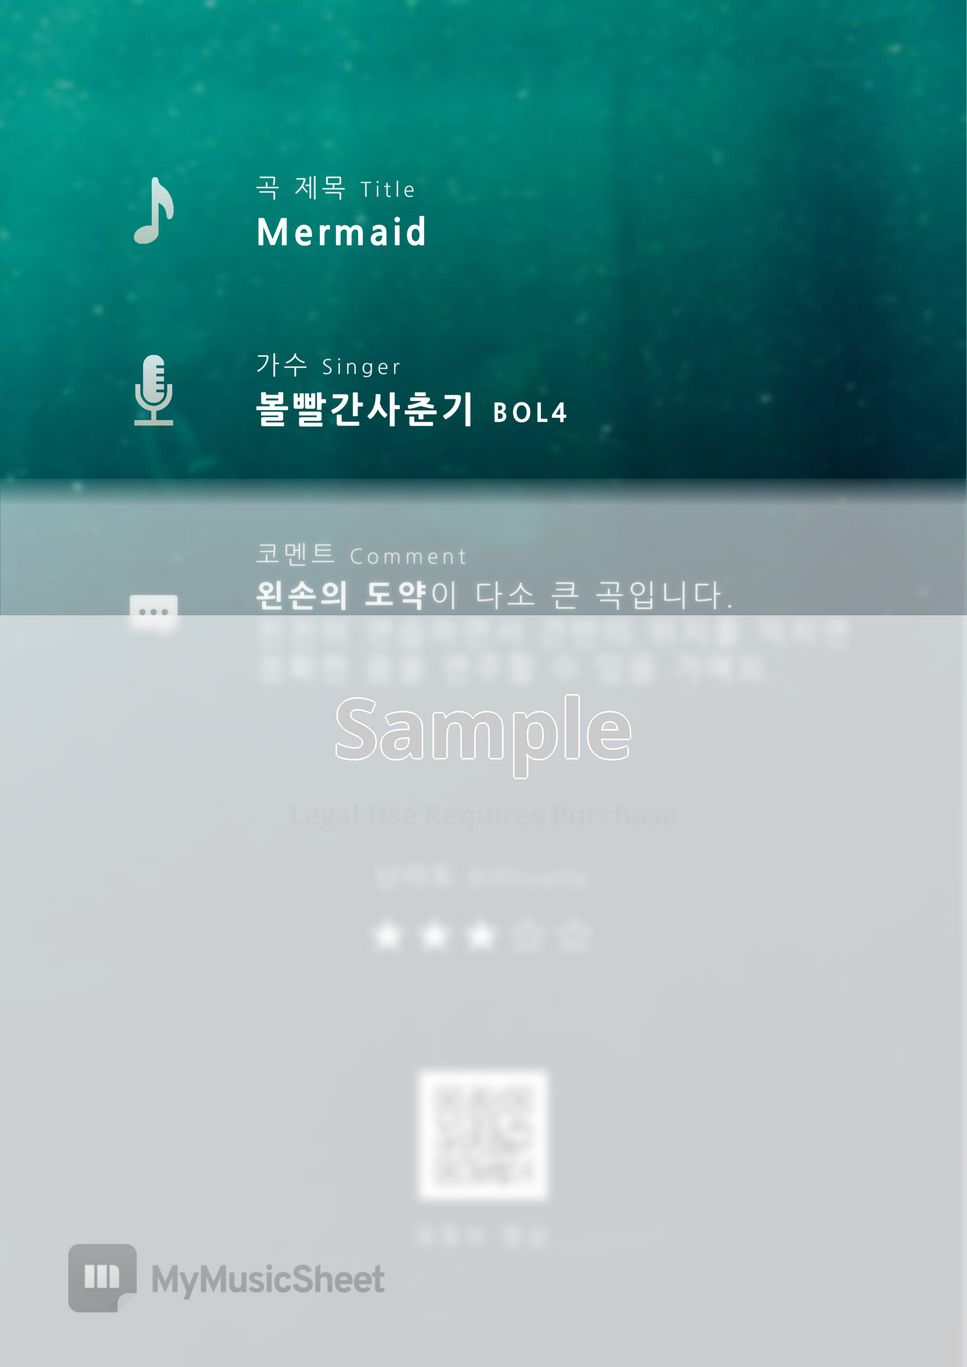 볼빨간사춘기 (BOL4) - Mermaid (난이도 ★★★☆☆) by PianoBox